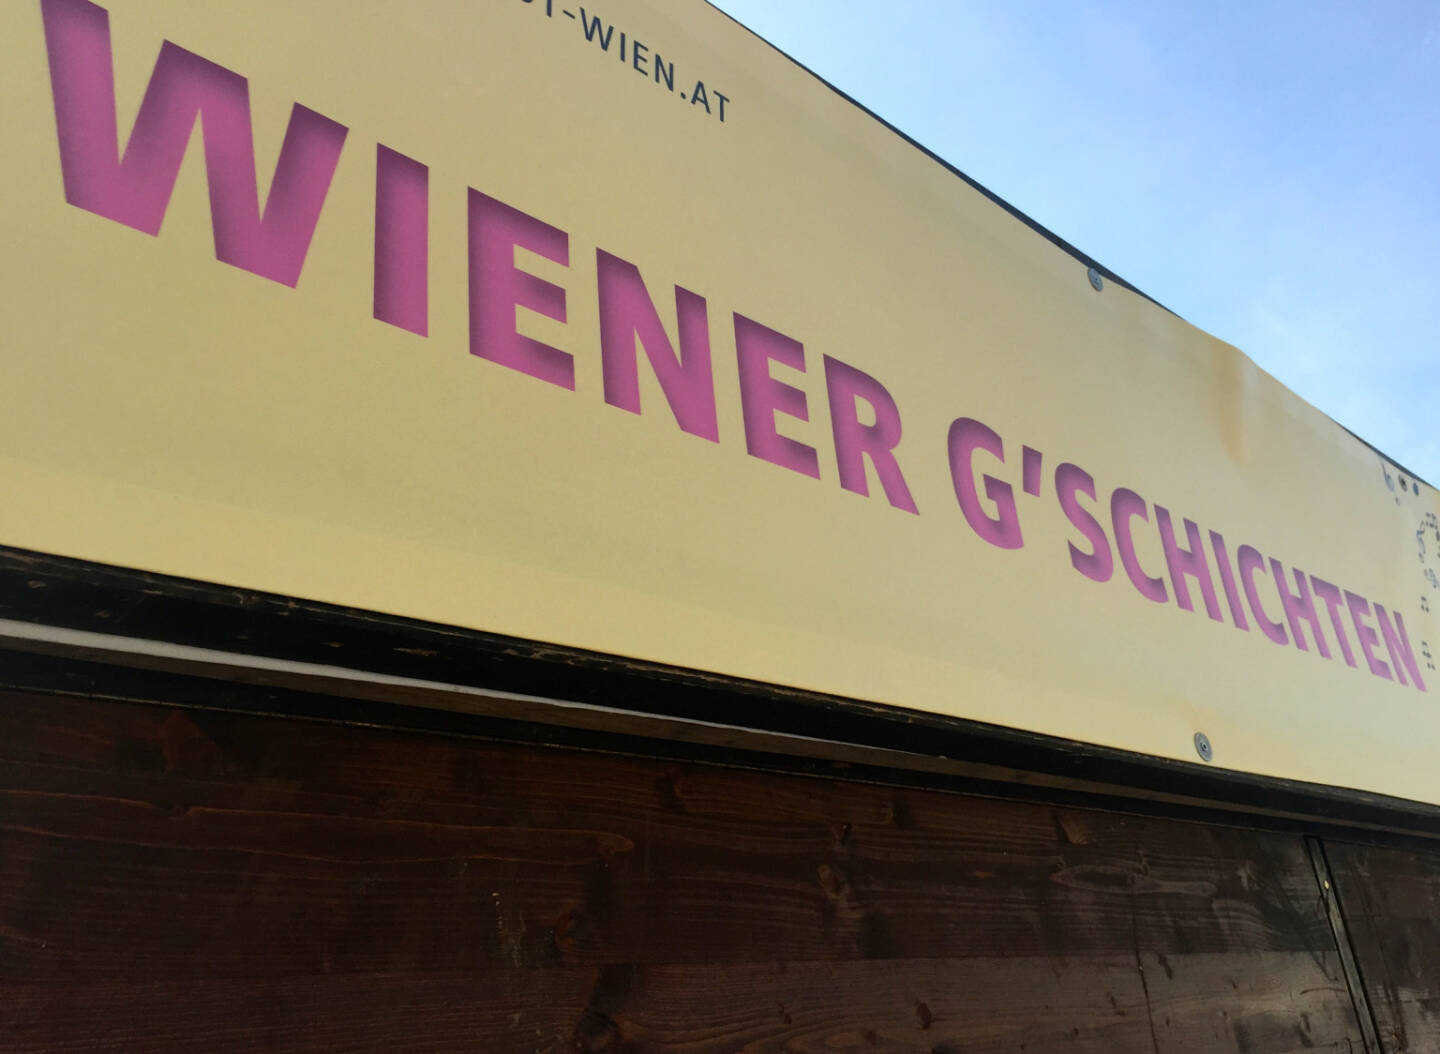 Wiener Gschichten Wien